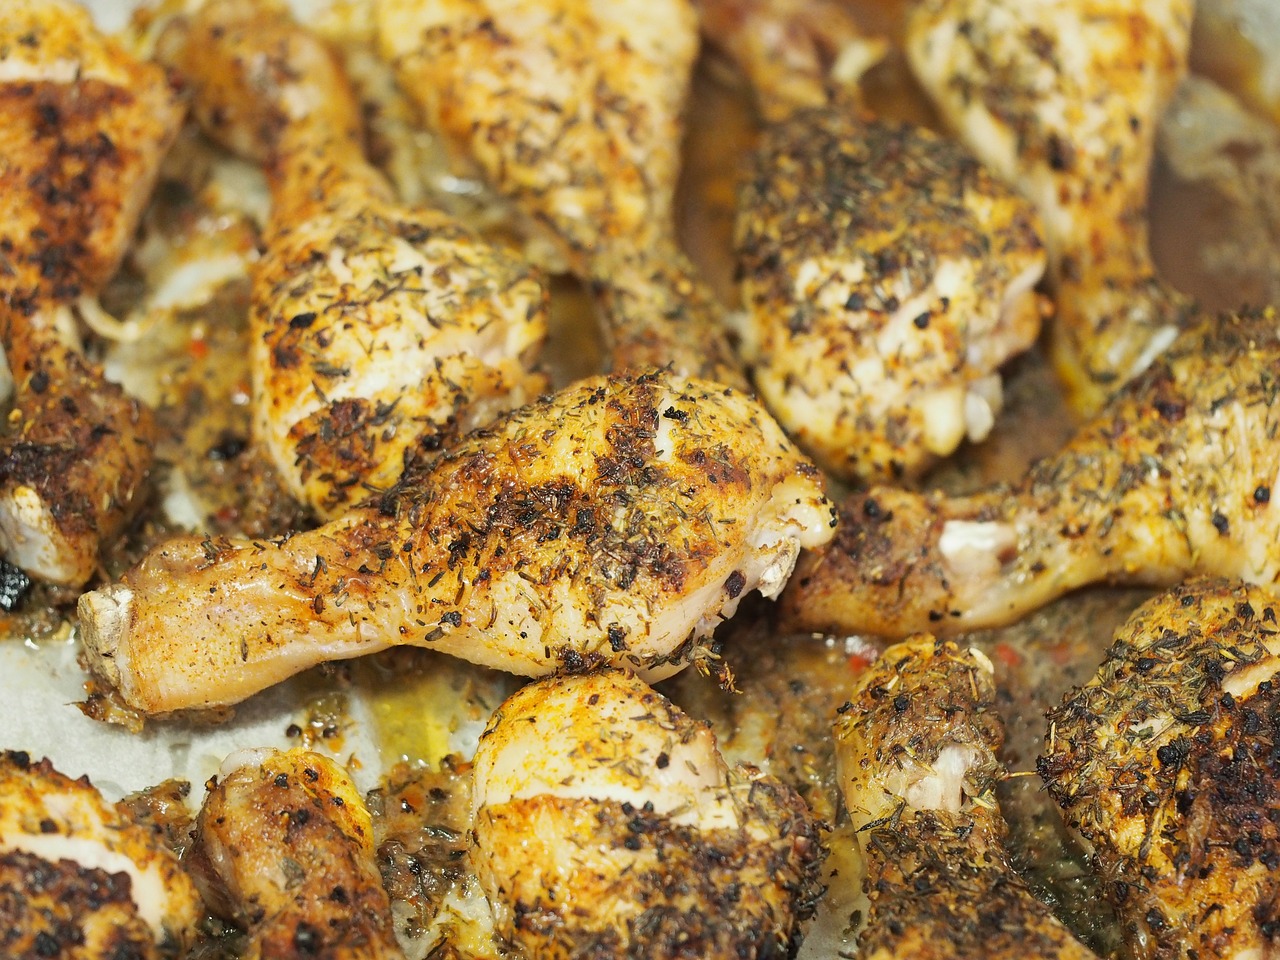 Recette cuisse de poulet : Des idées faciles pour cuisiner les cuisses de poulet